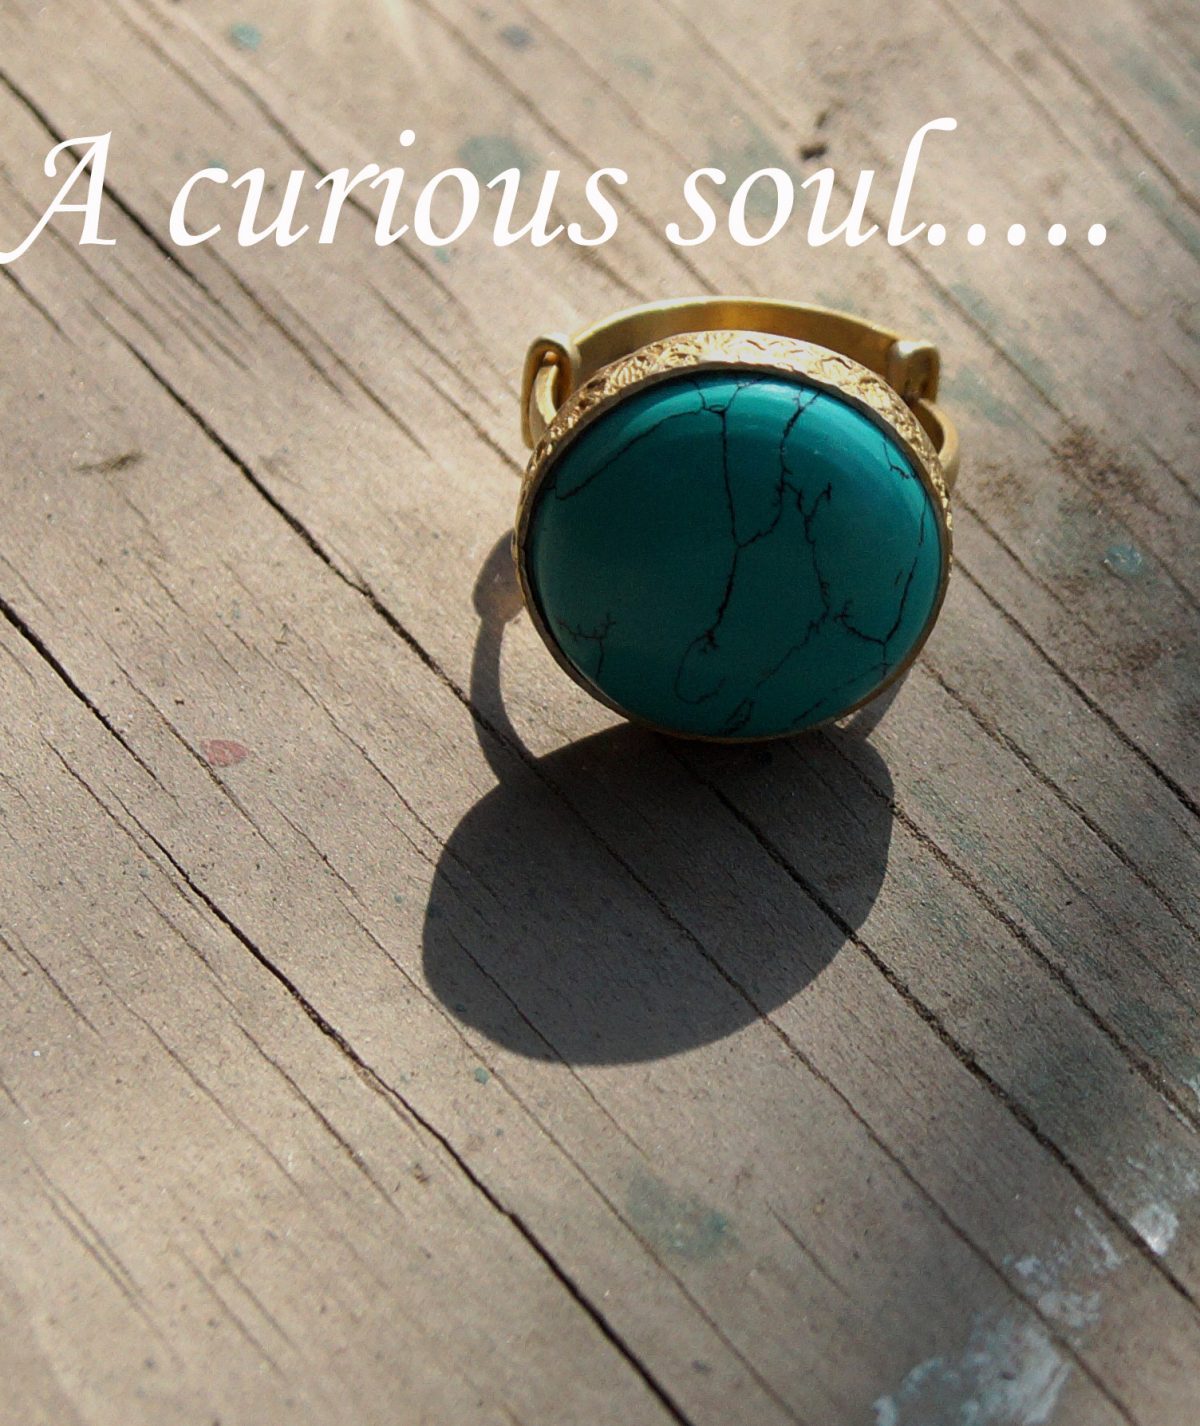 Curious Soul